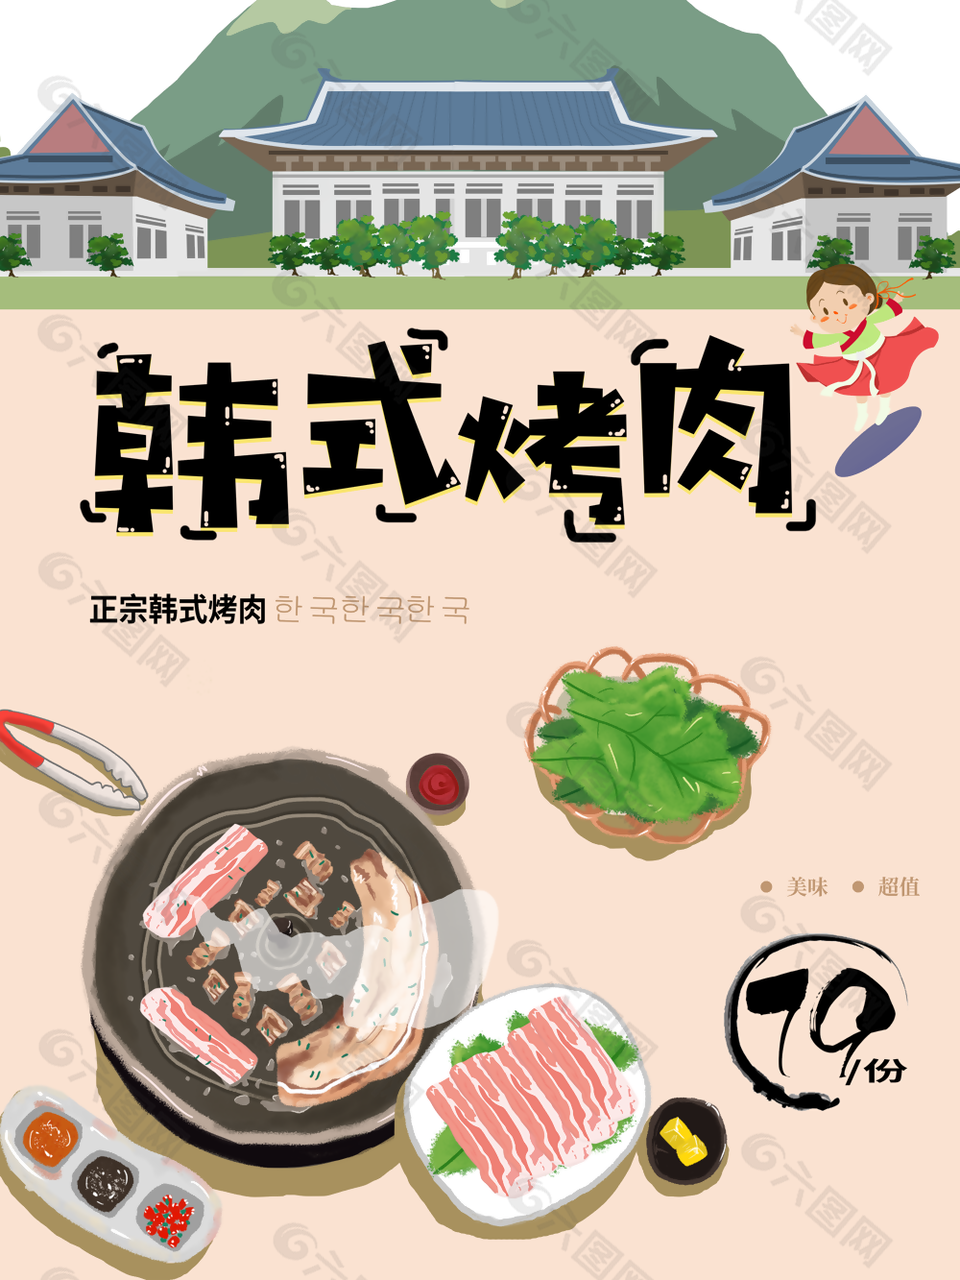 手绘创意韩式烤肉美食海报设计素材